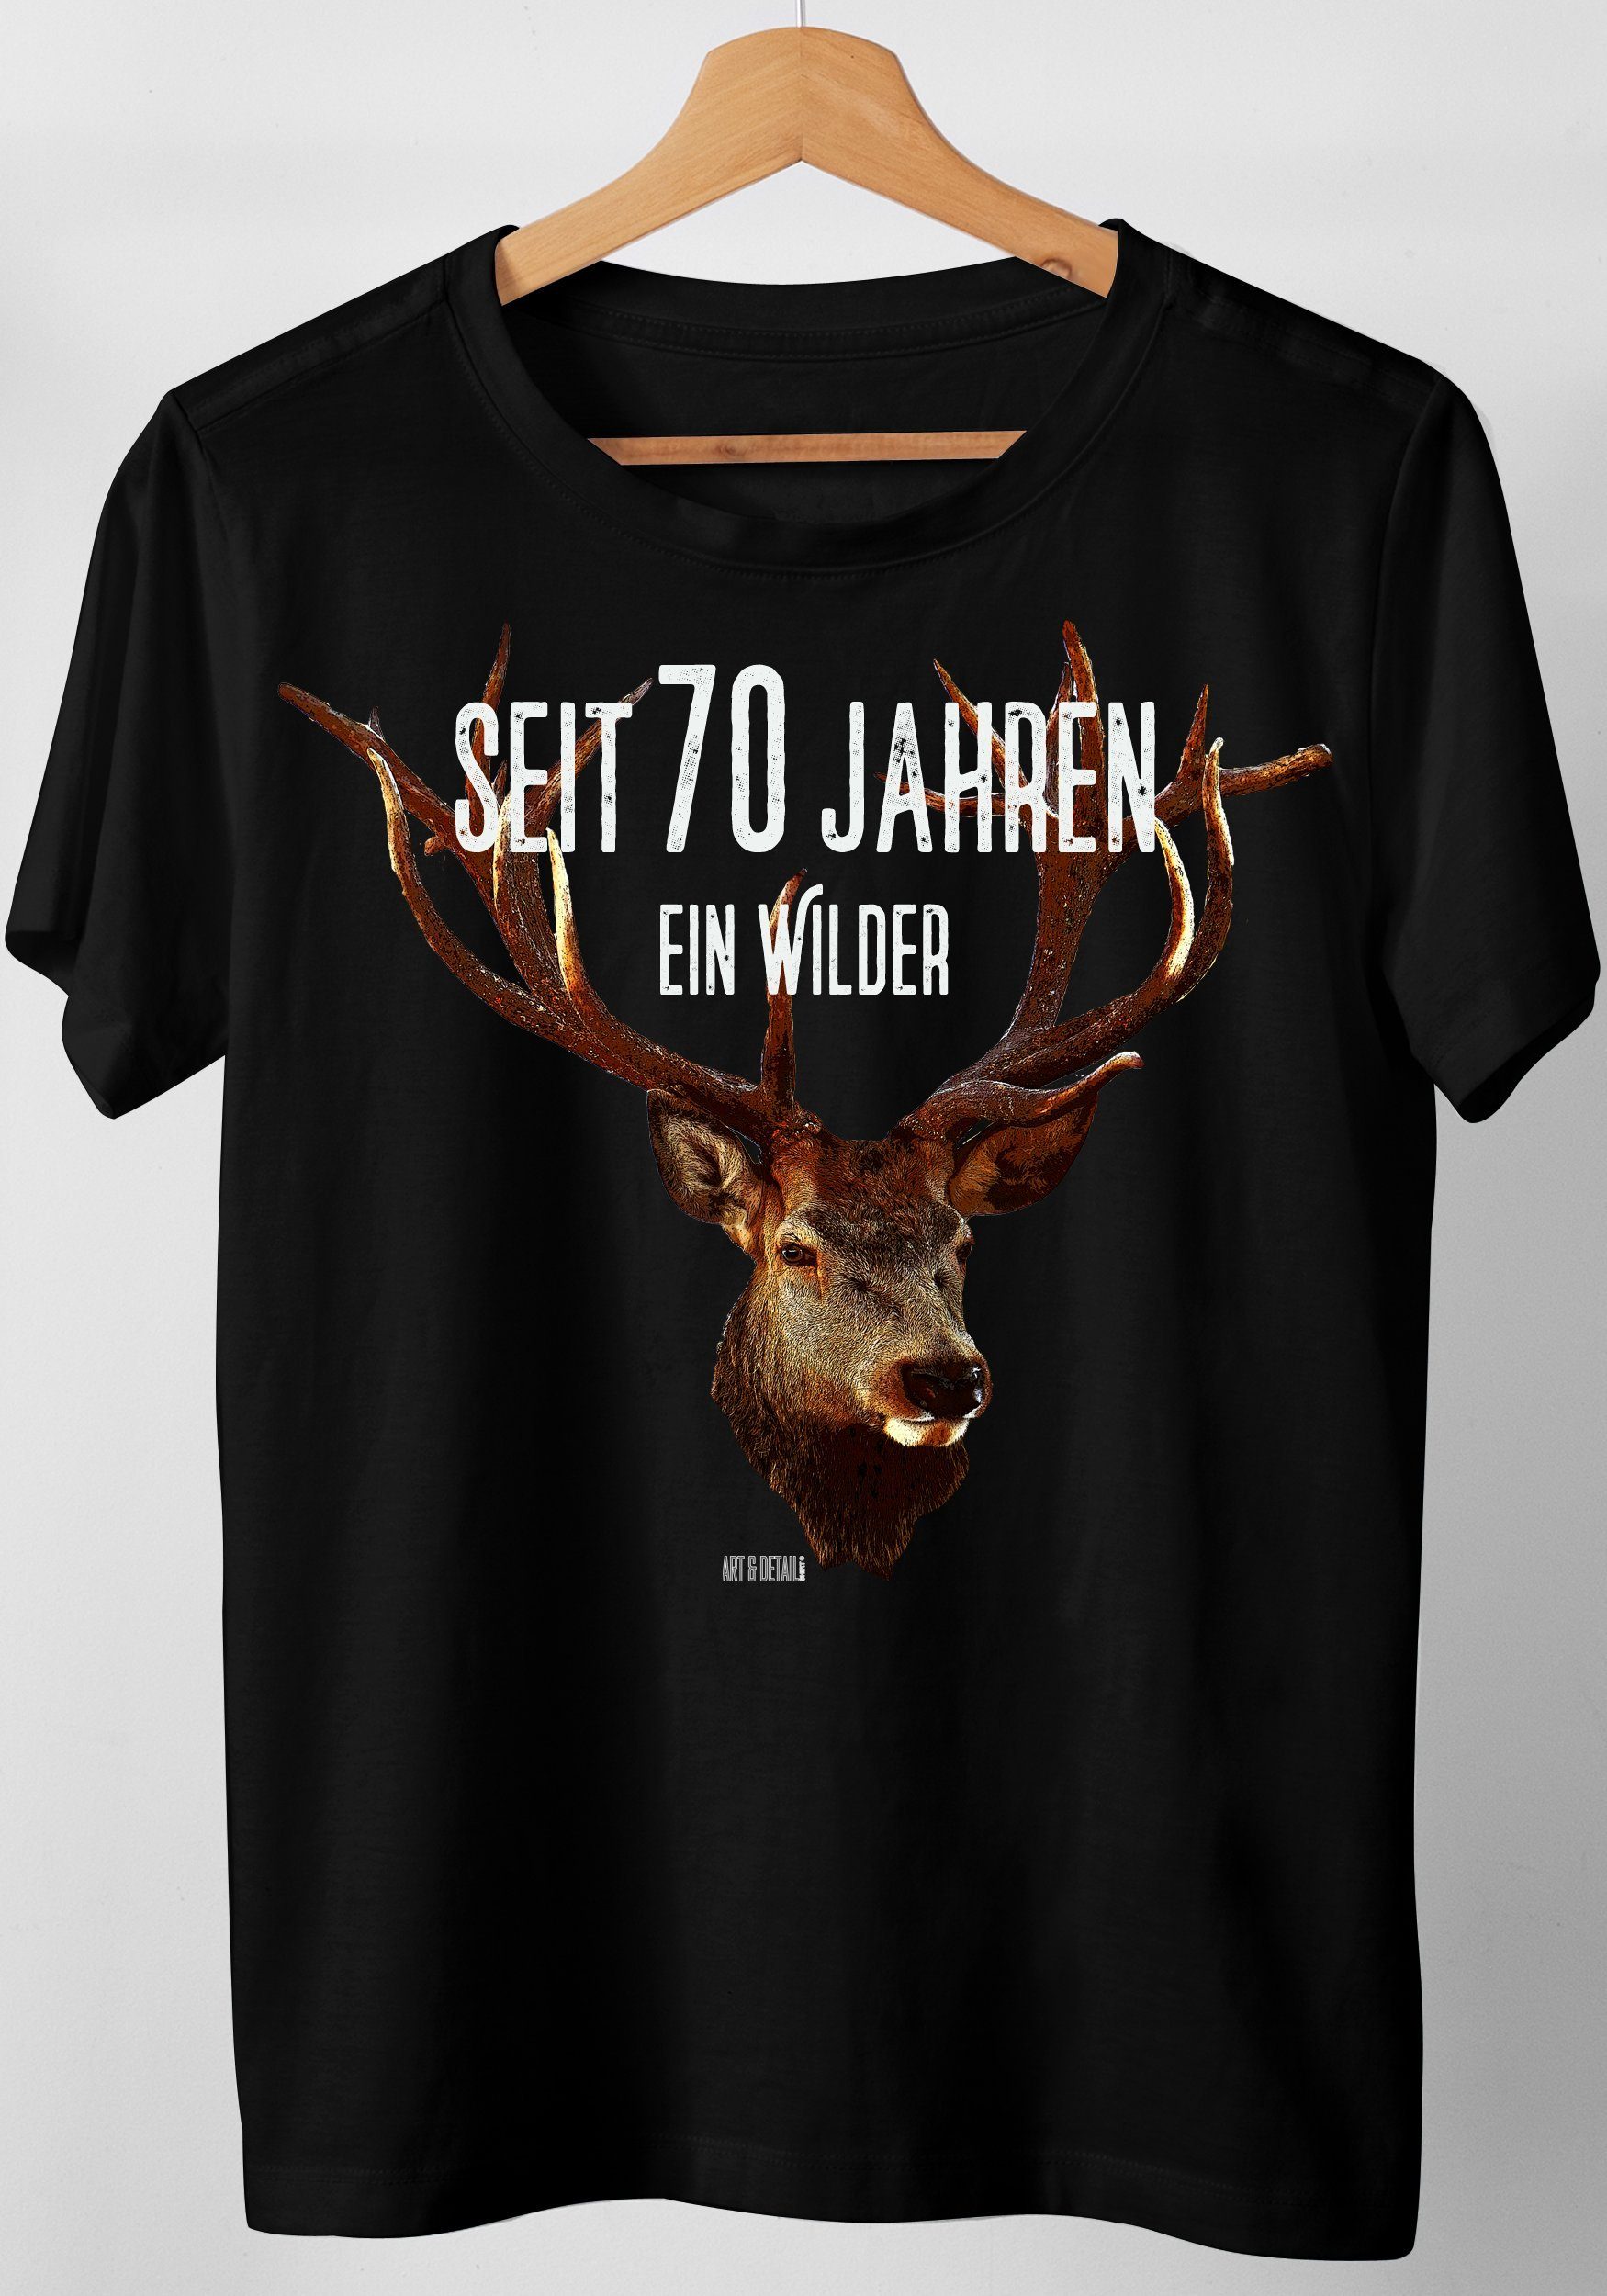 Art & Detail Shirt T-Shirt Wilder Schwarz 80, 70, Hirsch Jahre Jahren Geschenk, 30, Jahreszahlen, 50, Geburtstag 60, 70 Hirsch ein seit ... 40